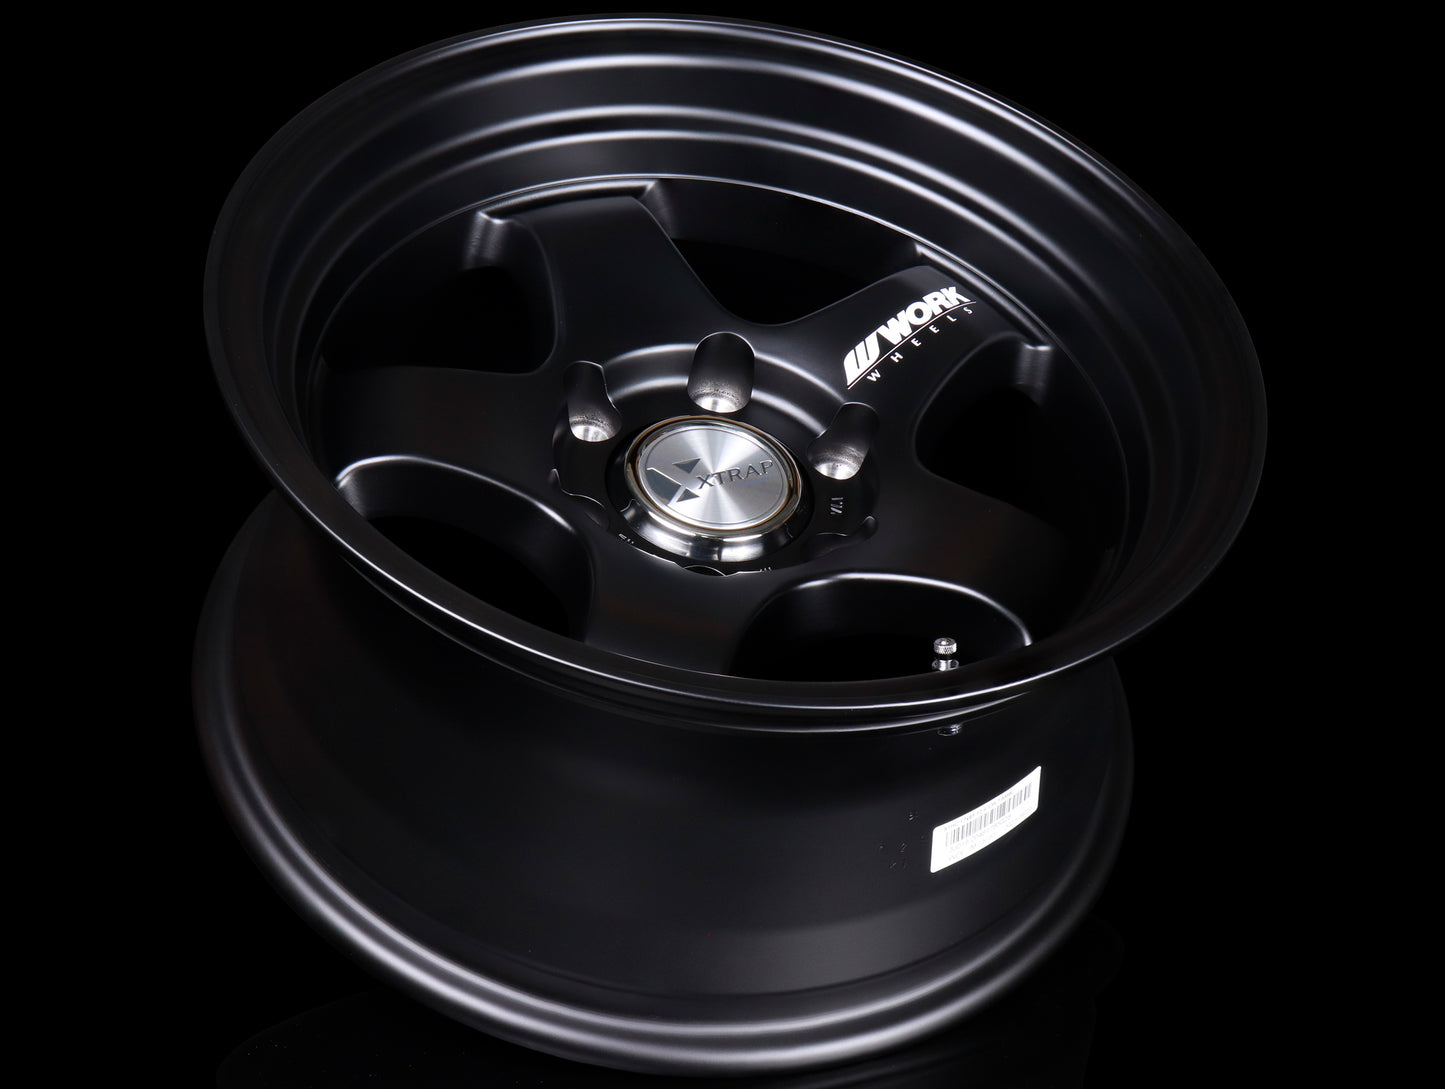 Work XTRAP S1HC Wheels - Matte Black - 17x8.5 / -10 / 6x139.7